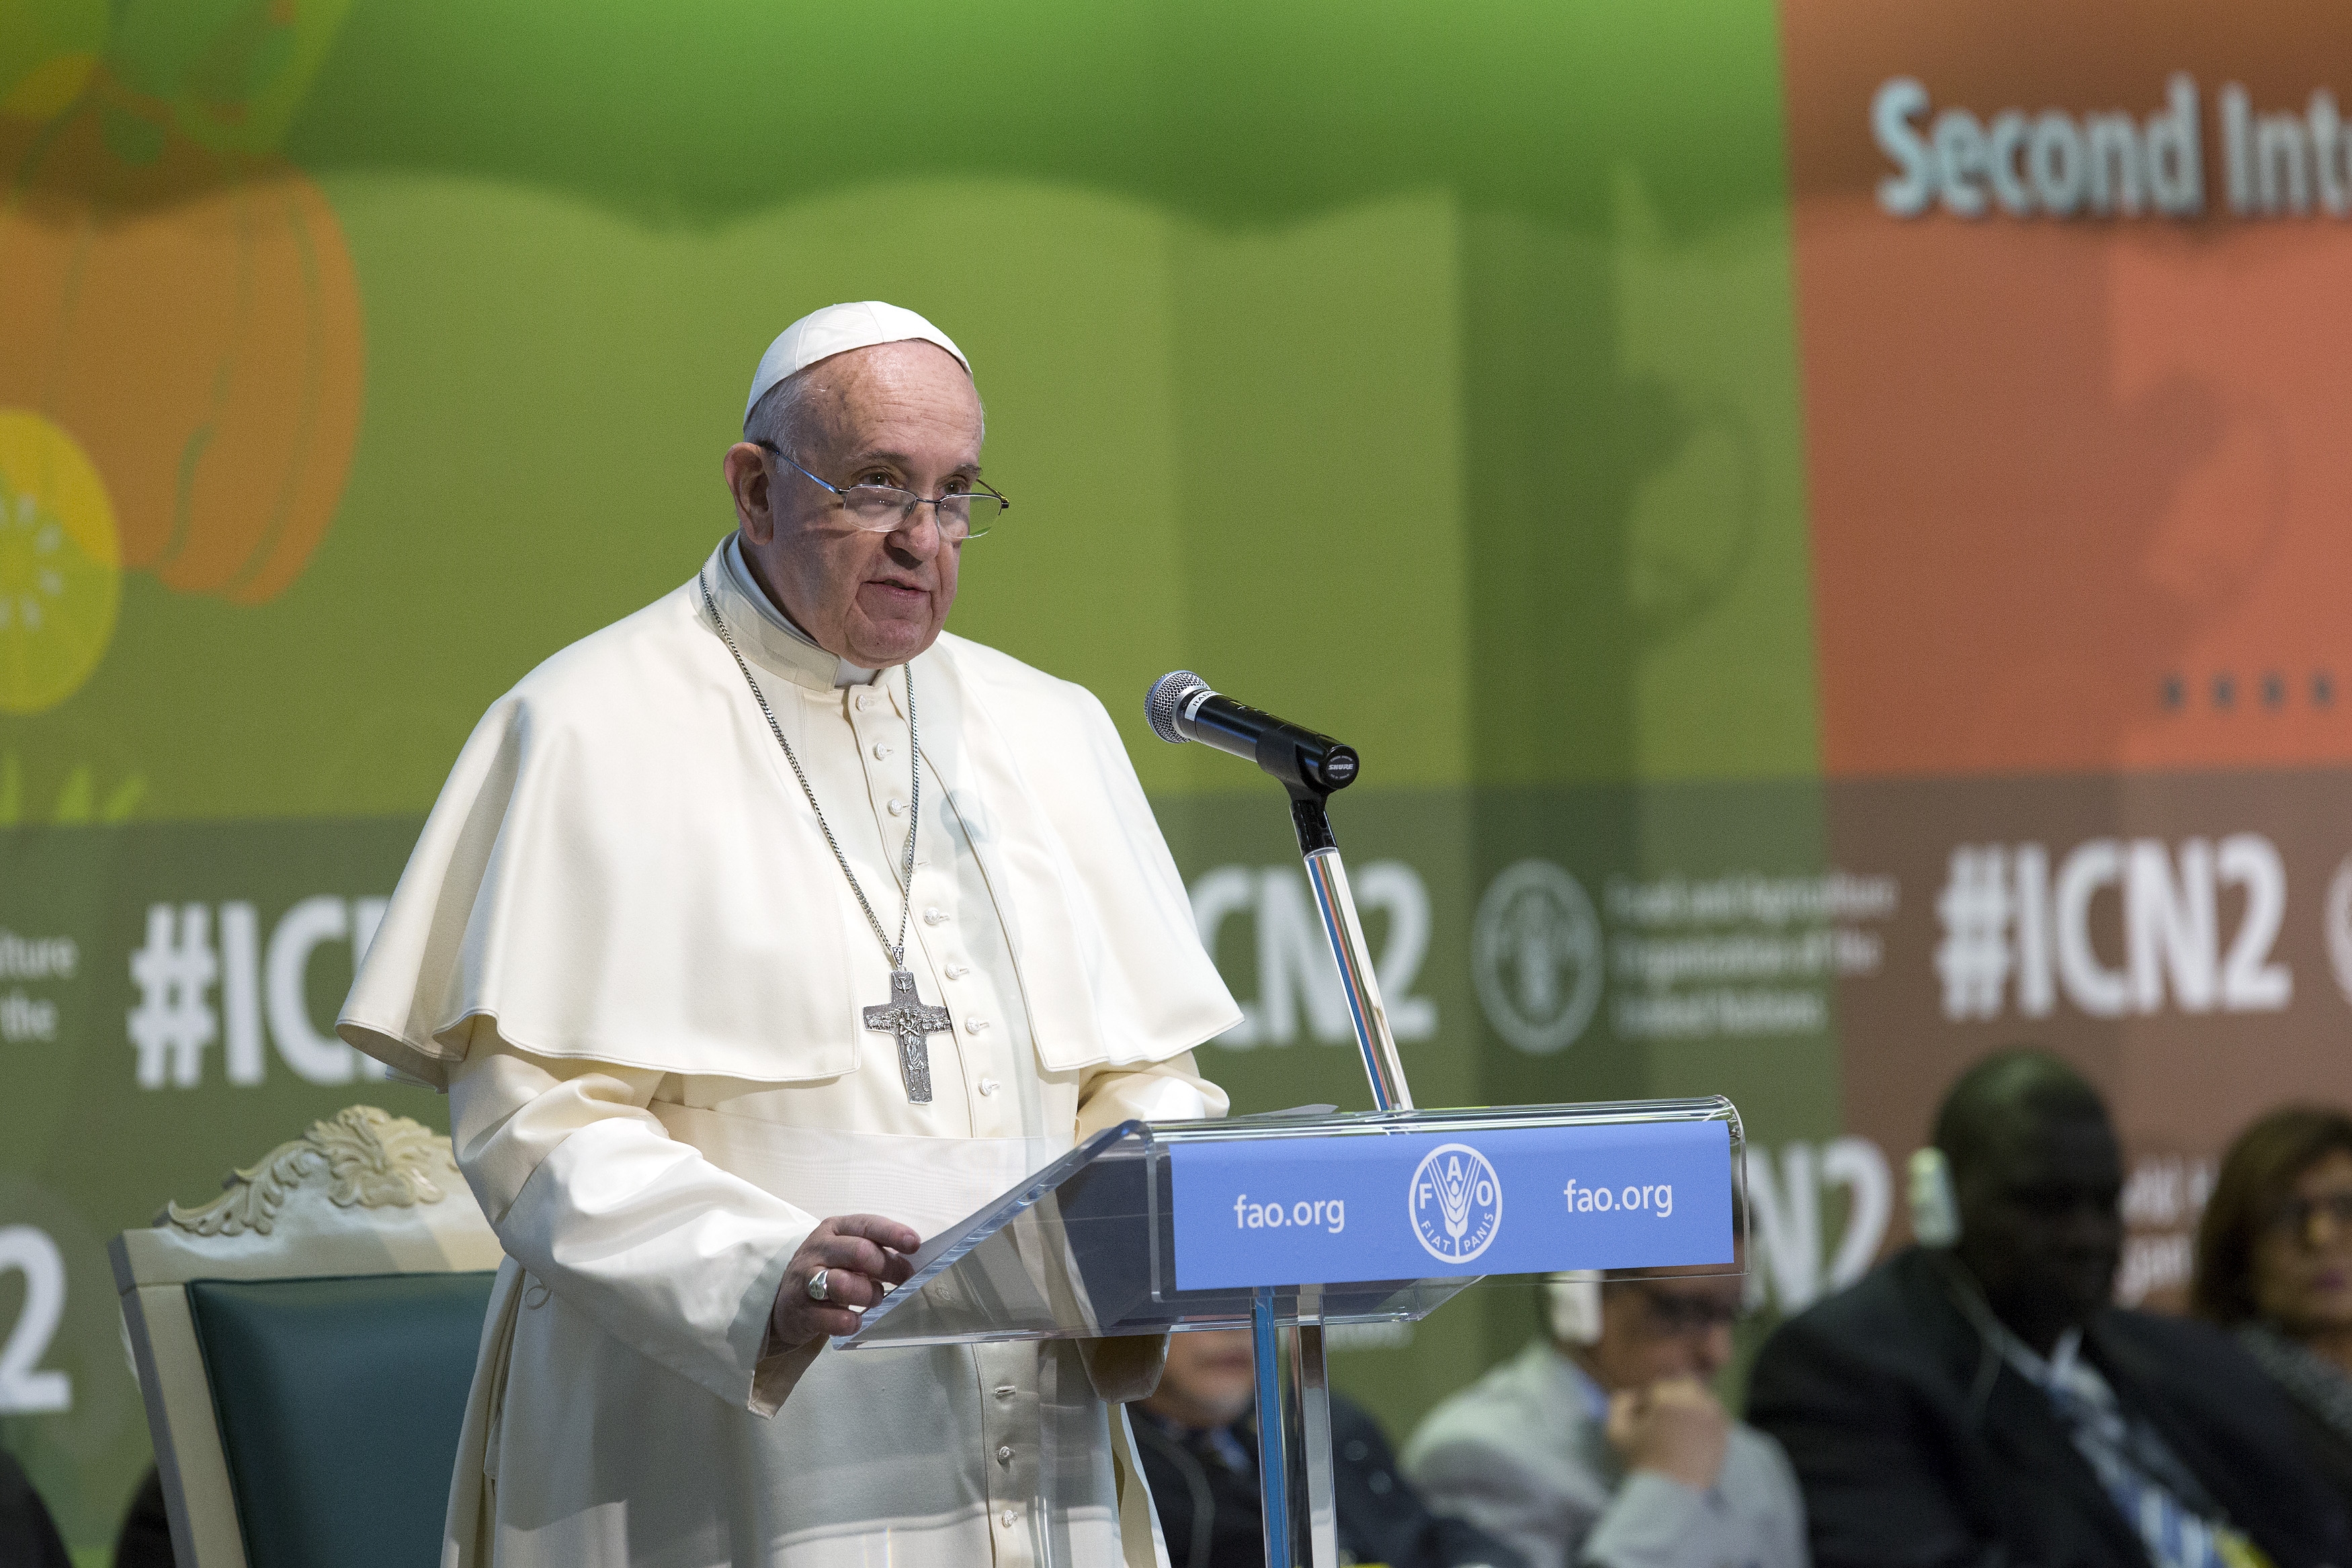 Intervention du pape François à la deuxième Conférence internationale sur la nutrition (CIN2) les 19-21 novembre 2014 à Rome, Italie. Photo : FAO